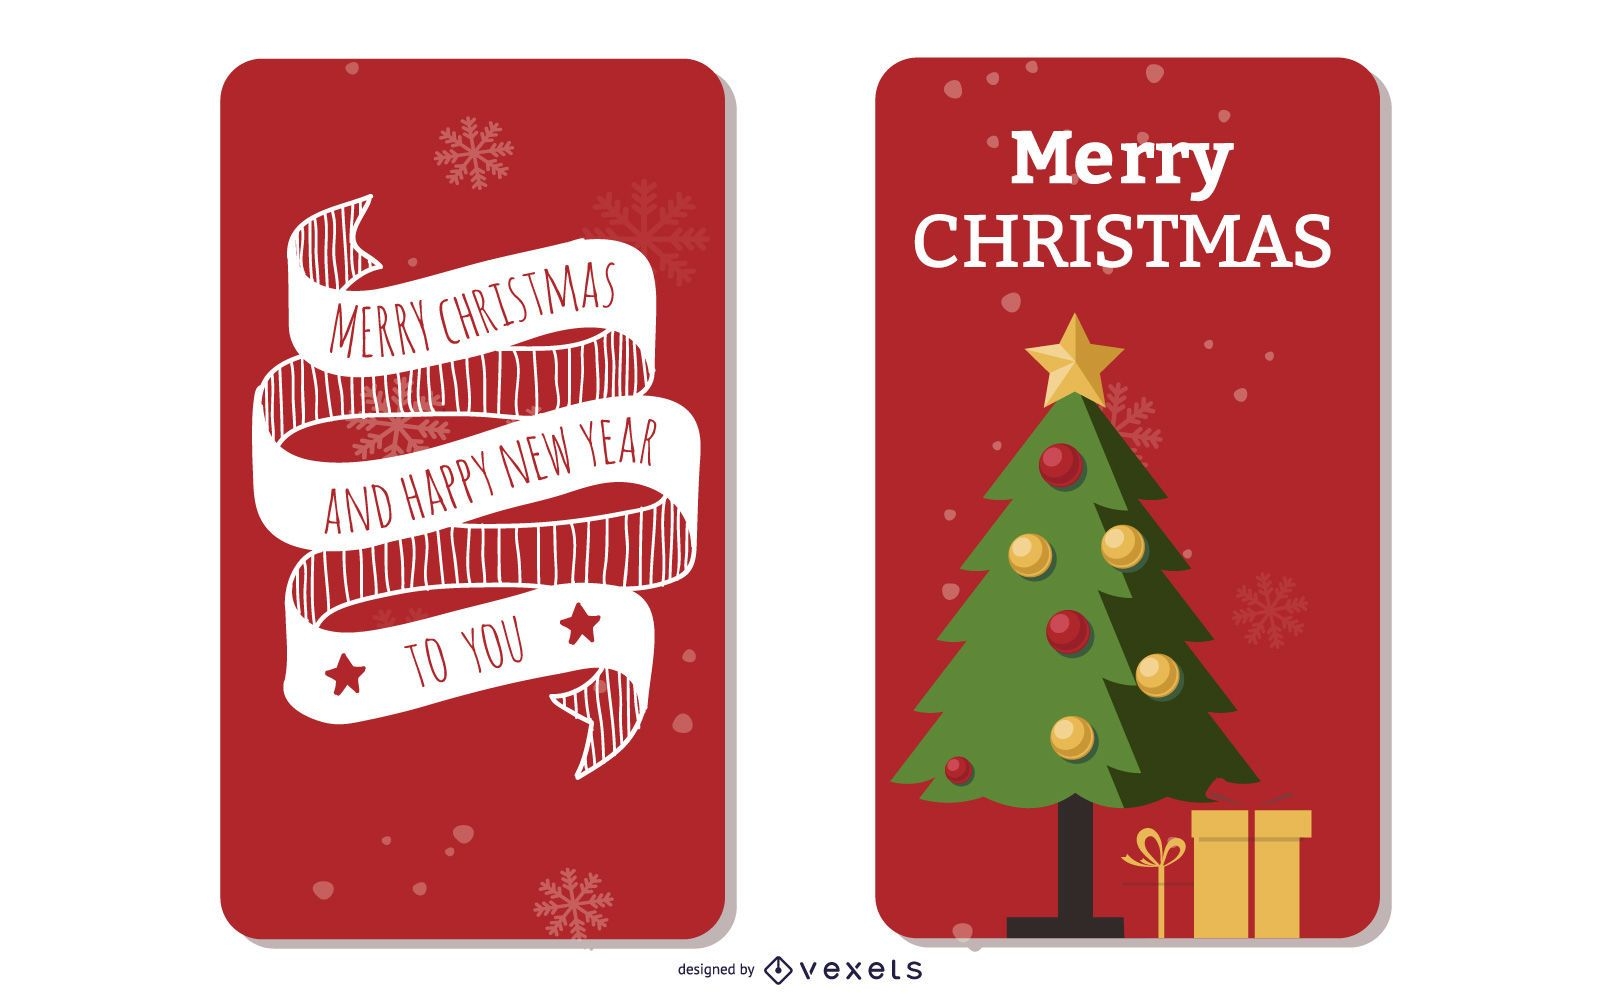 2 Hermoso conjunto de plantillas de folleto de Navidad